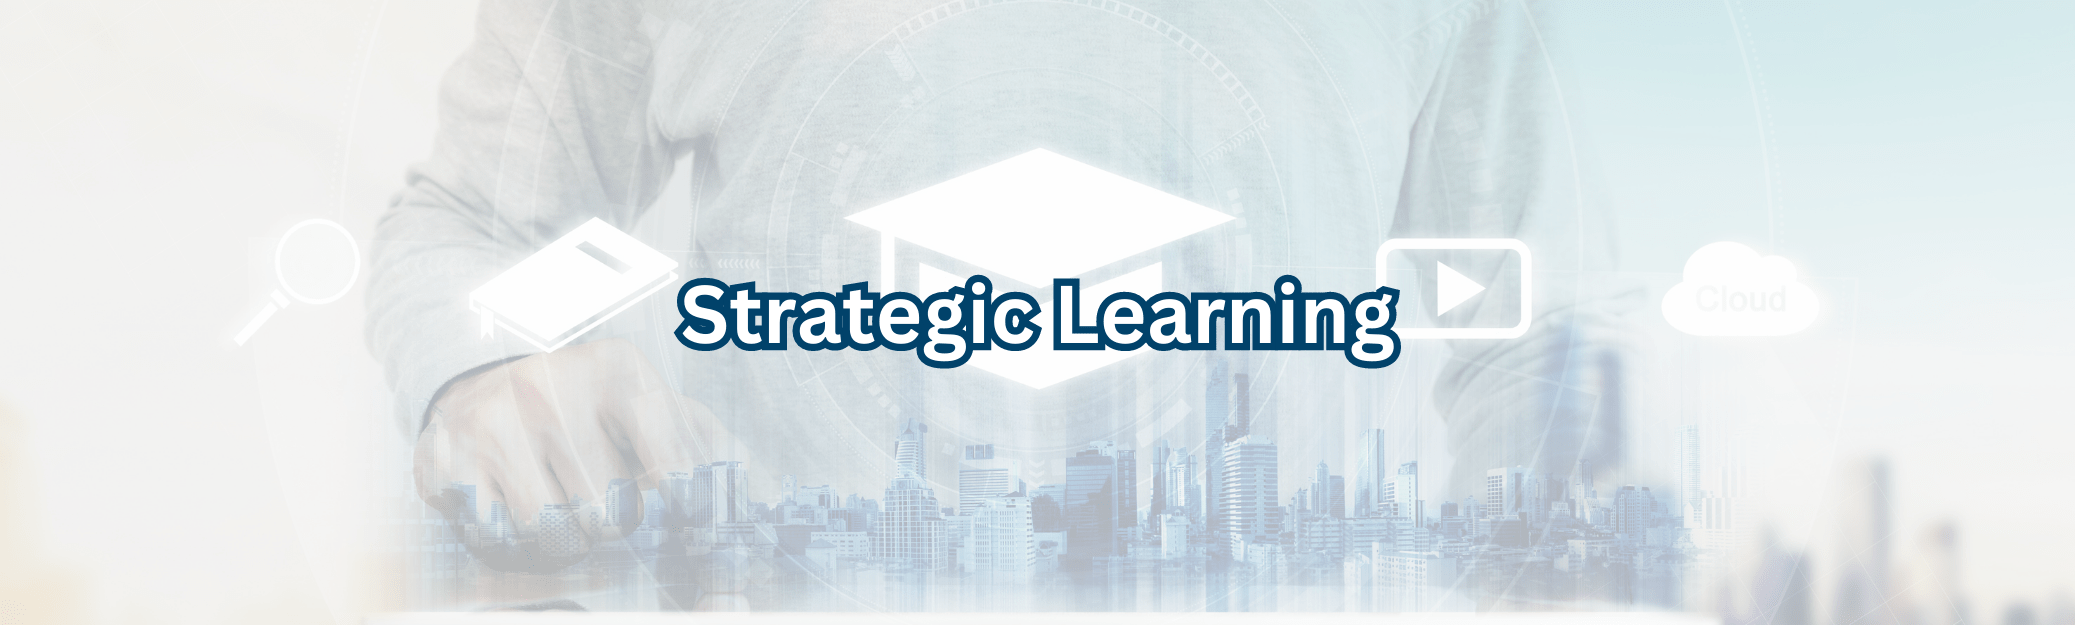 strategic learning banner